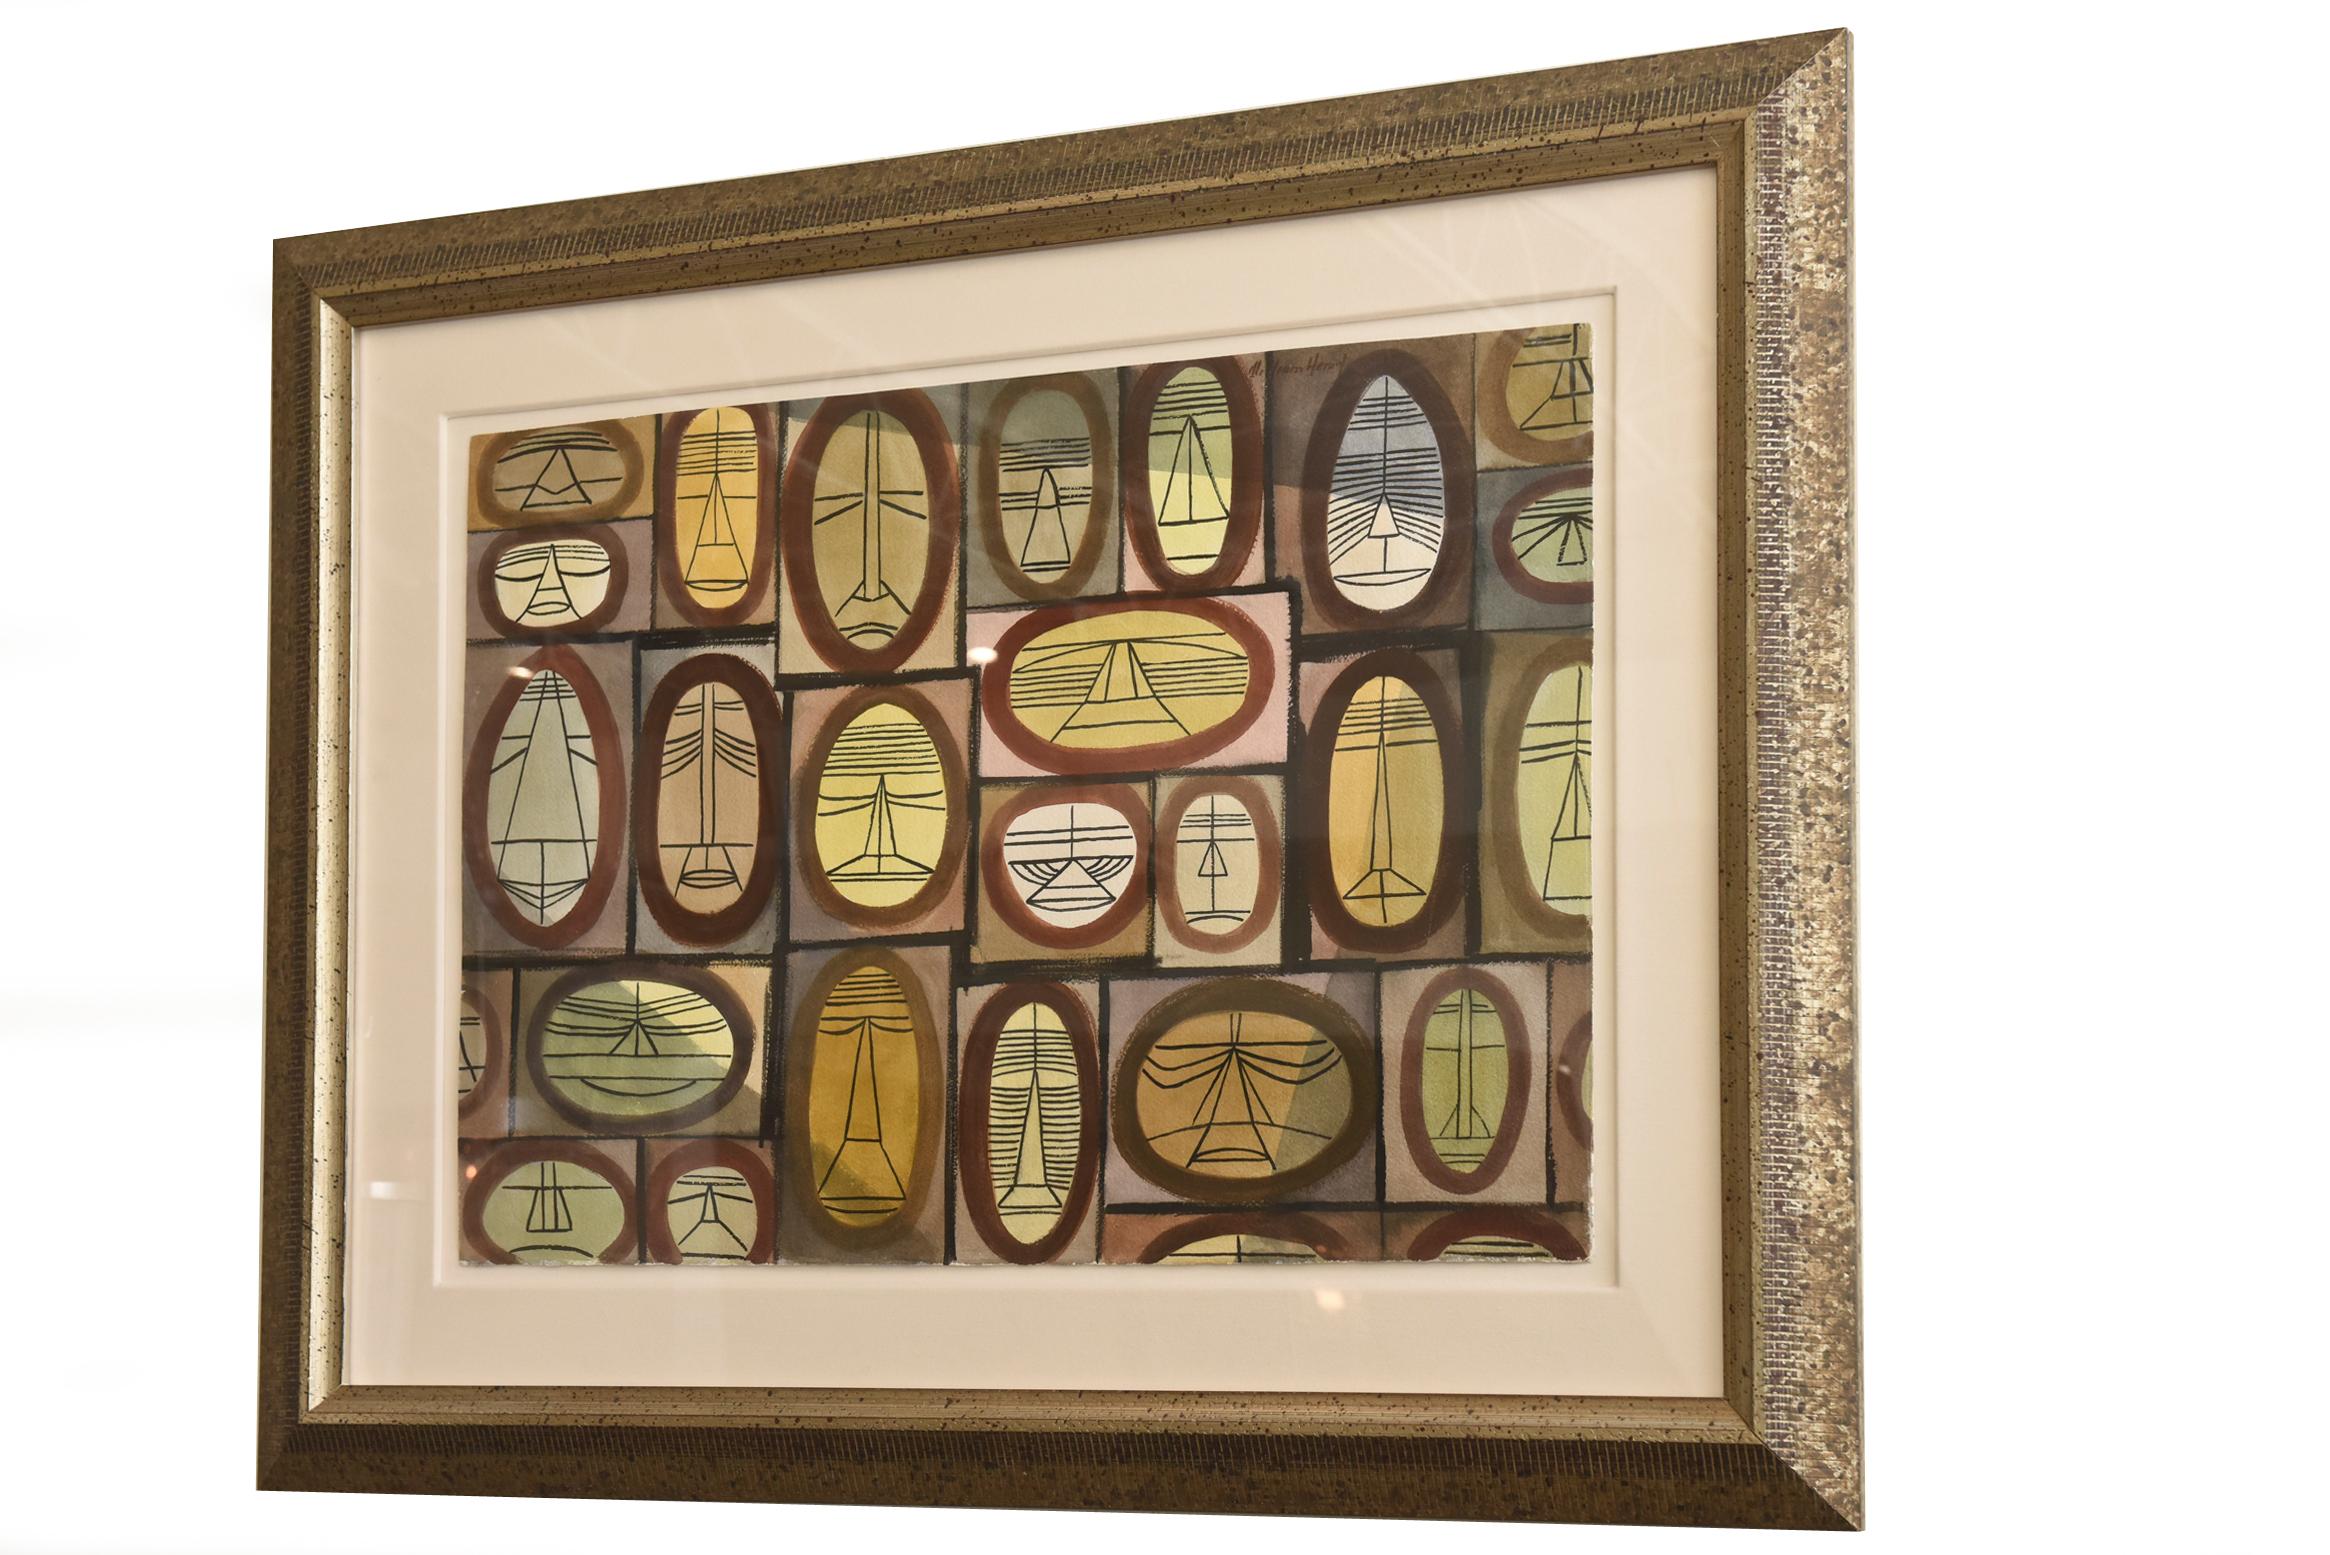 Cette aquarelle horizontale de William Henry, unique en son genre, est une combinaison de visages cubistes individuels et d'influences africaines. Chaque visage est délimité en formant un oblong ou un cercle qui est ensuite entouré d'une bordure